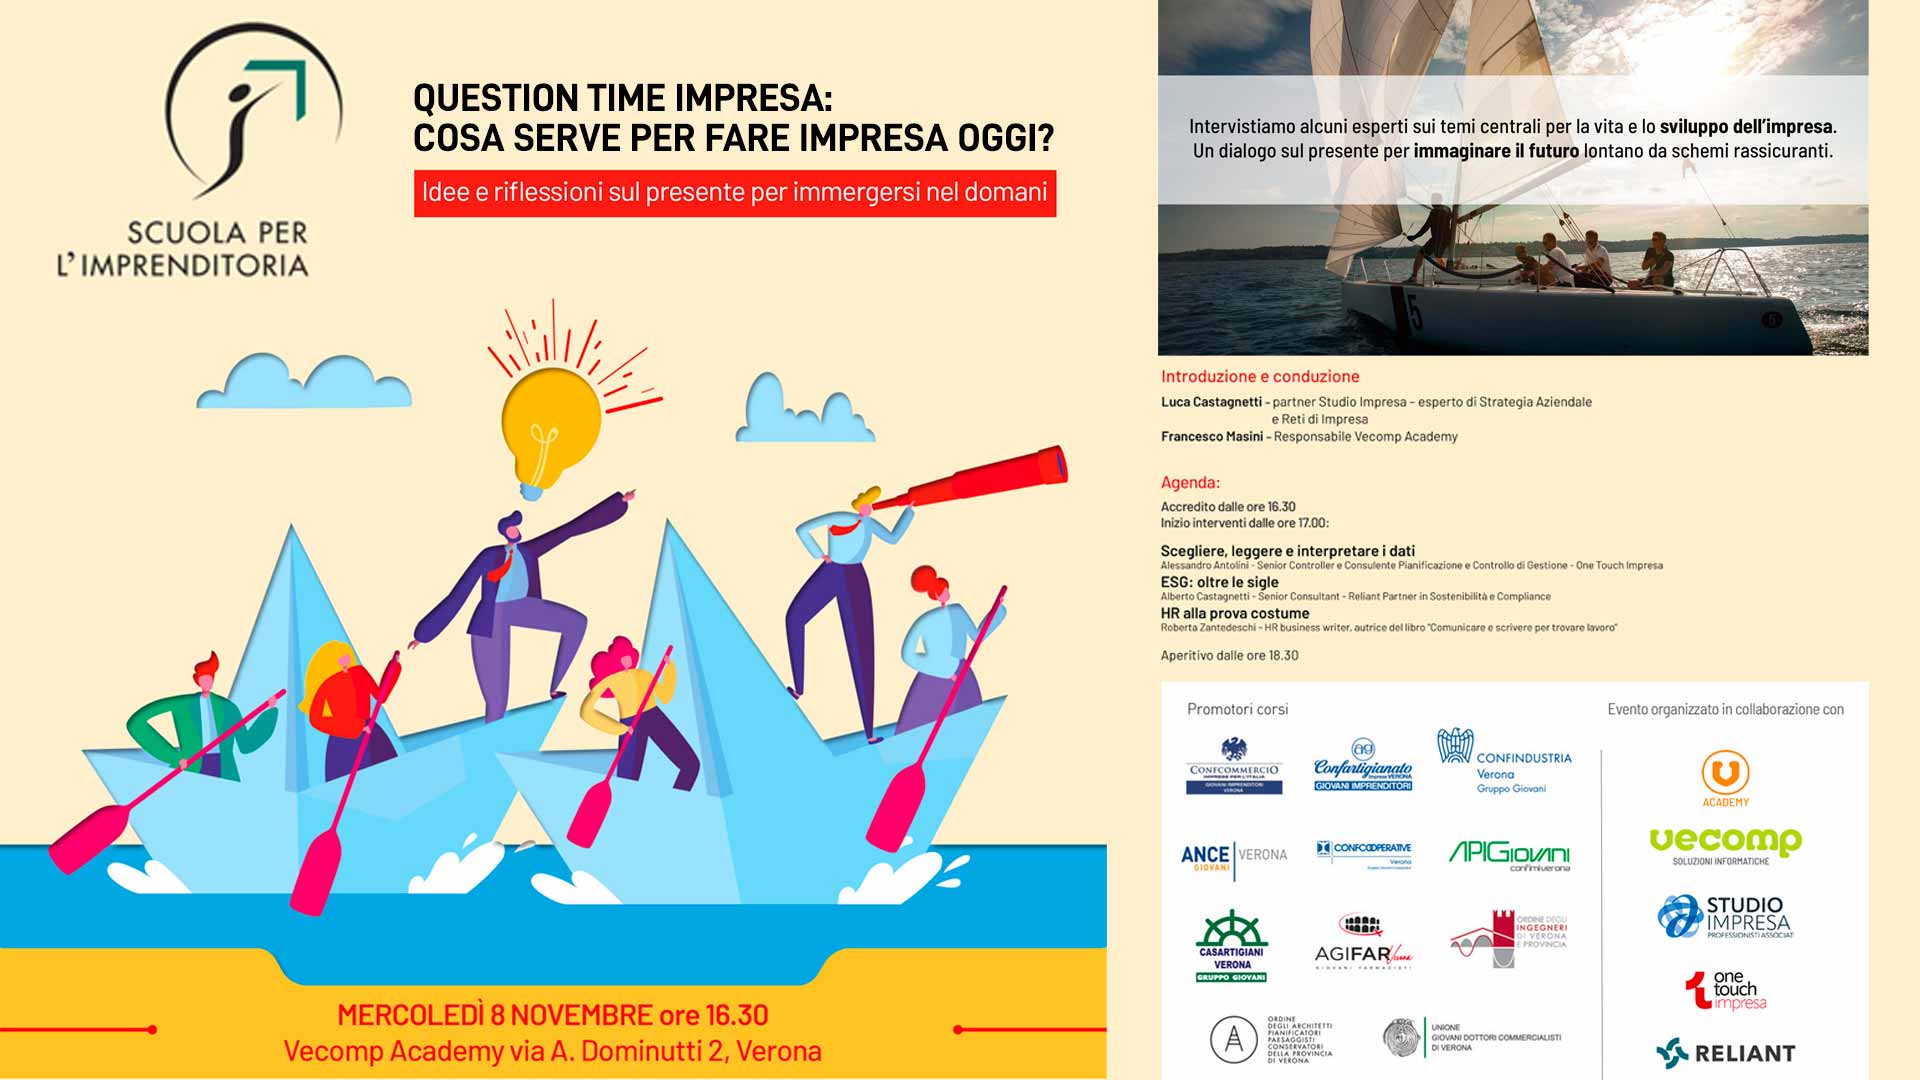 EVENTO – Scuola per l'Imprenditoria: 8 novembre, "Question Time Impresa: cosa serve per fare impresa oggi?", evento aperto a tutti gli imprenditori